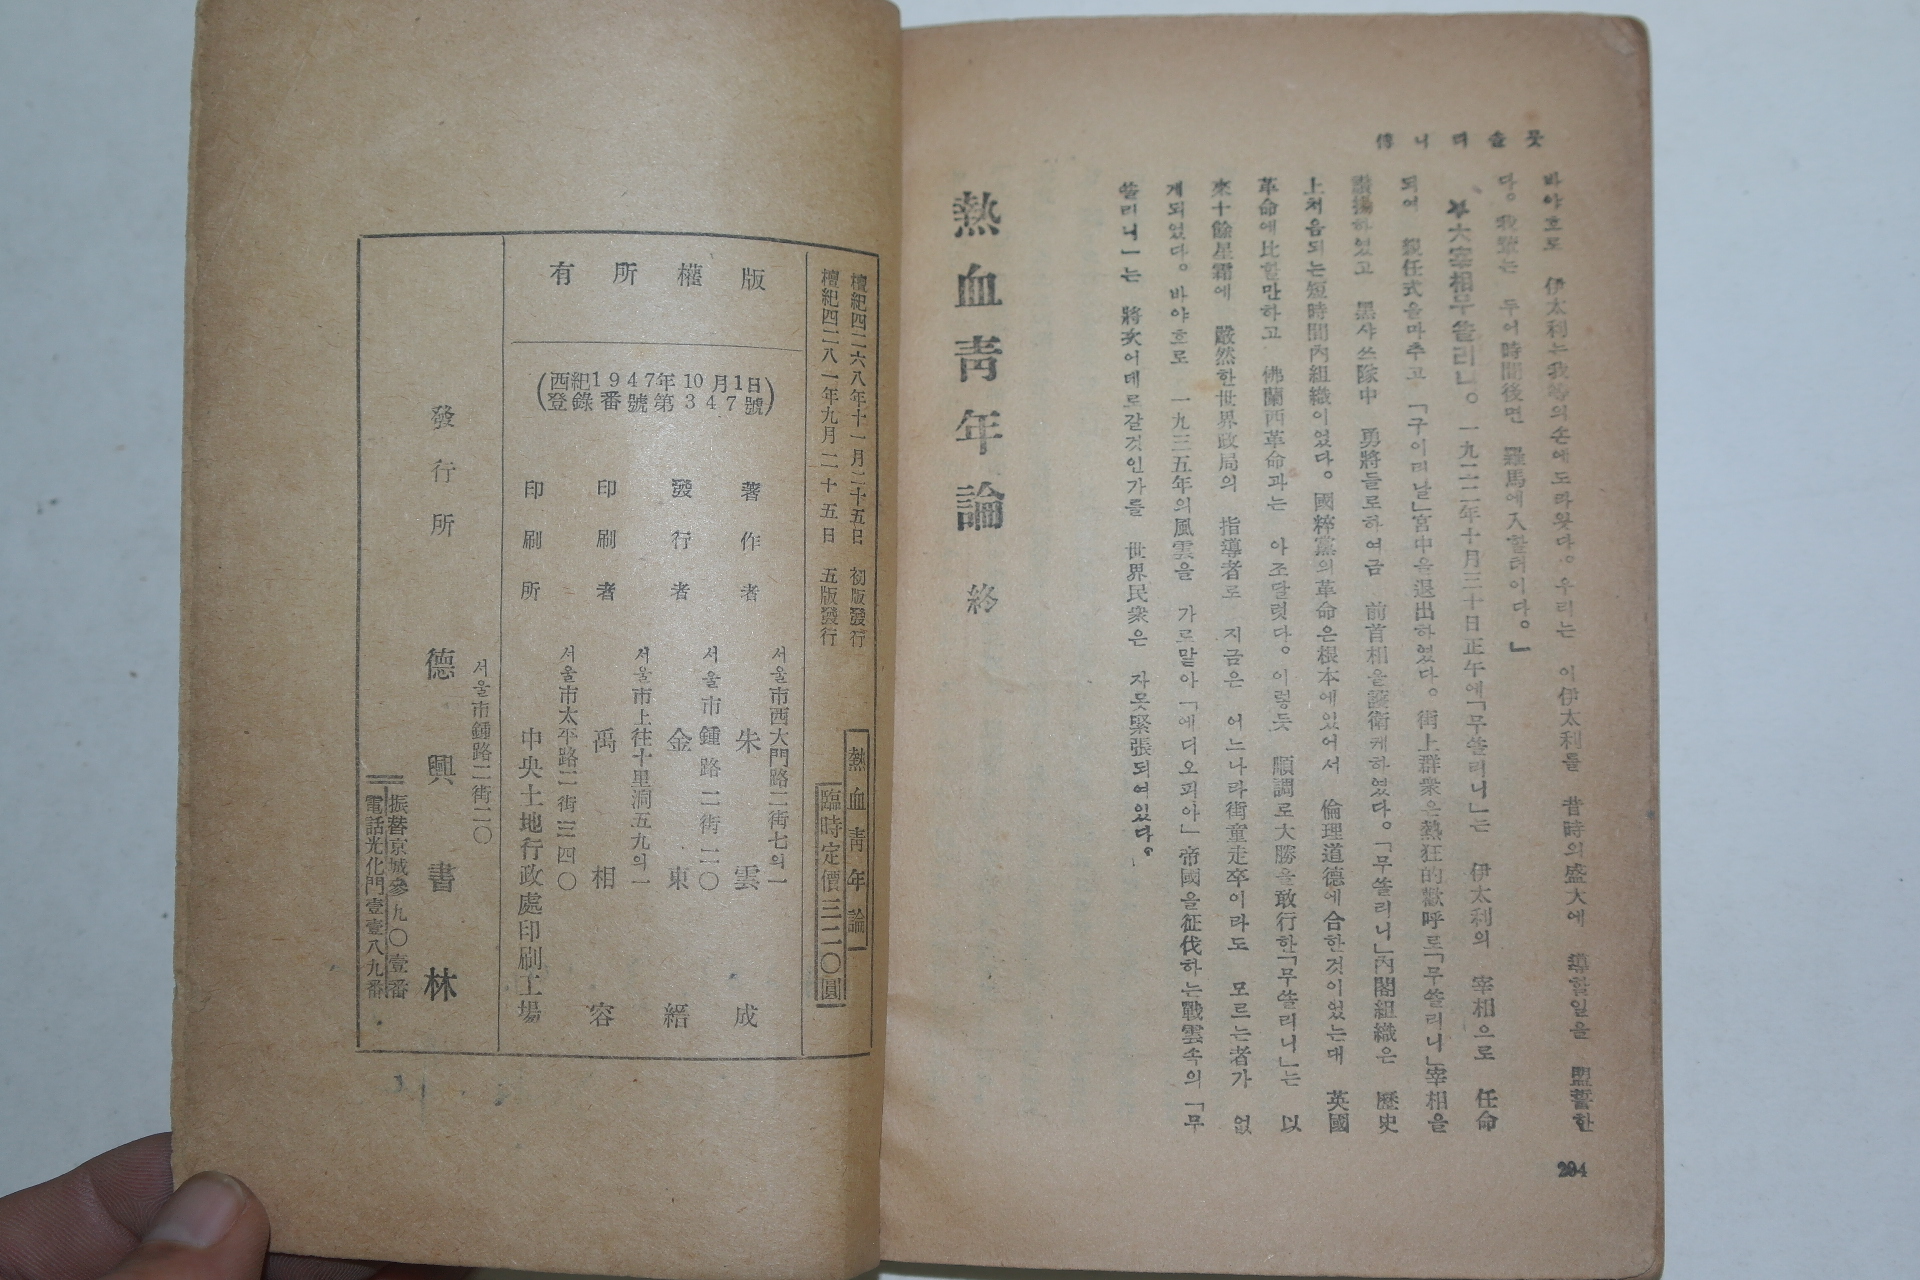 1948년 주운성(朱雲成) 열혈청년론(熱血靑年論)